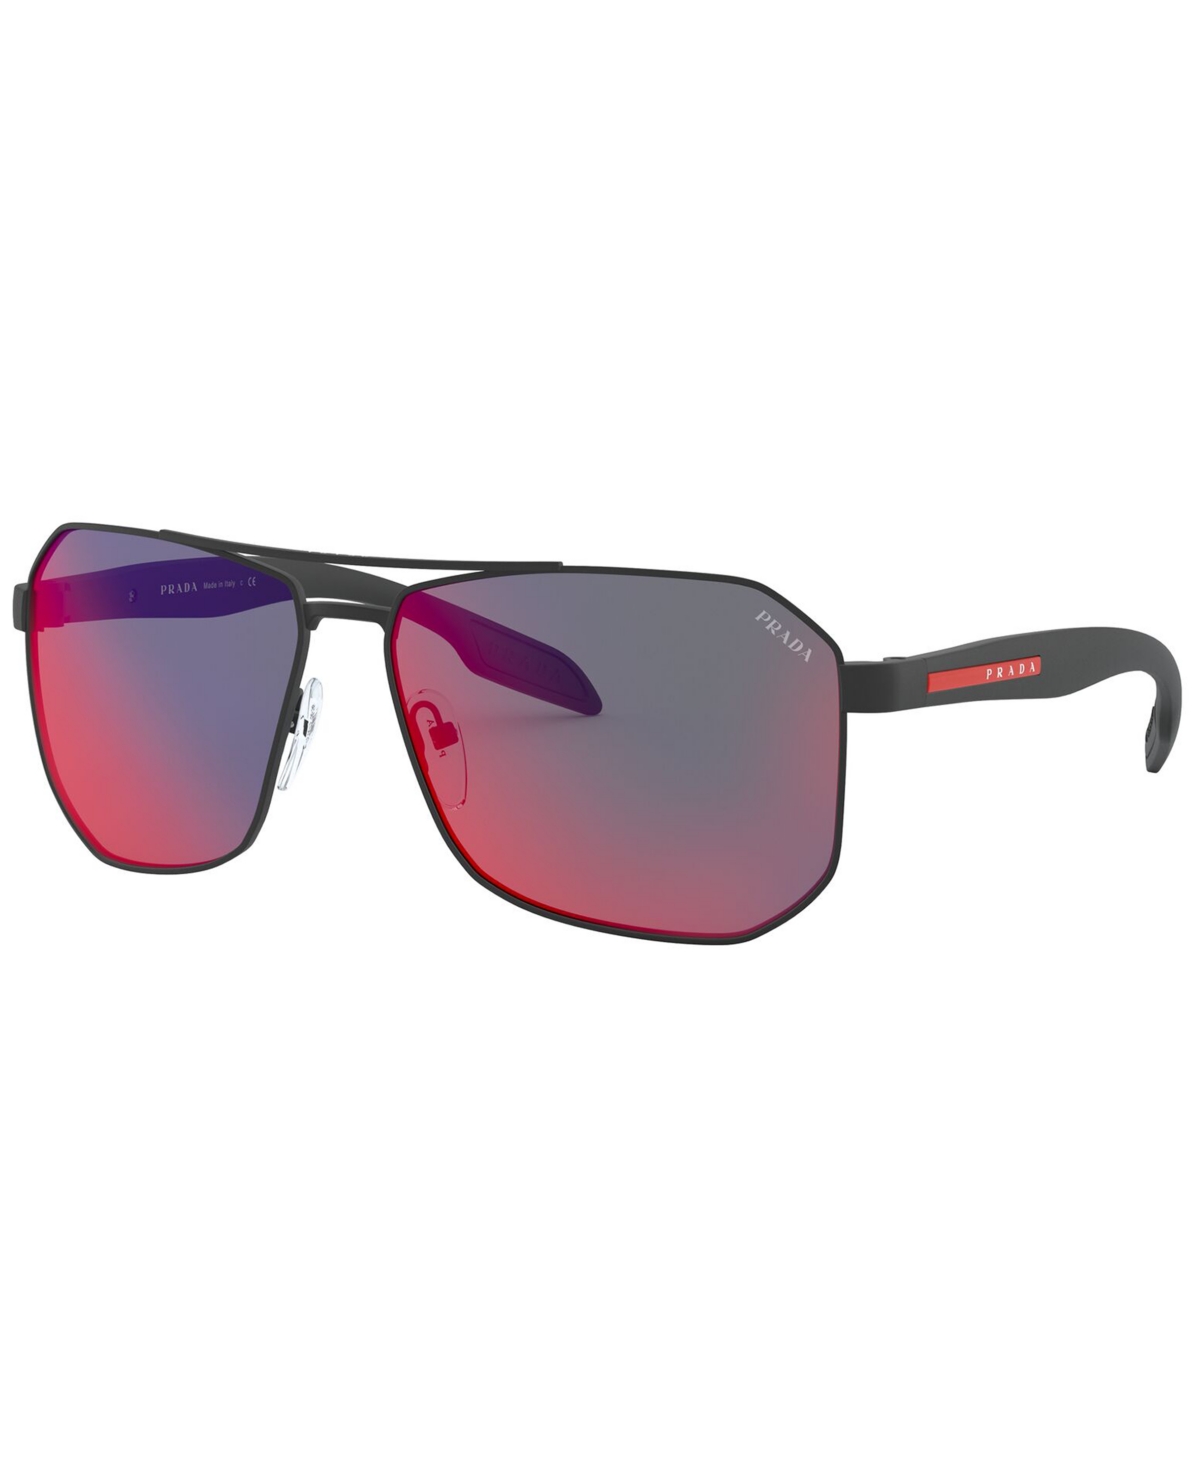 Prada Men's Sunglasses, Ps 51vs 62 In Black Rubber,dark Grey Mirror Blue,red